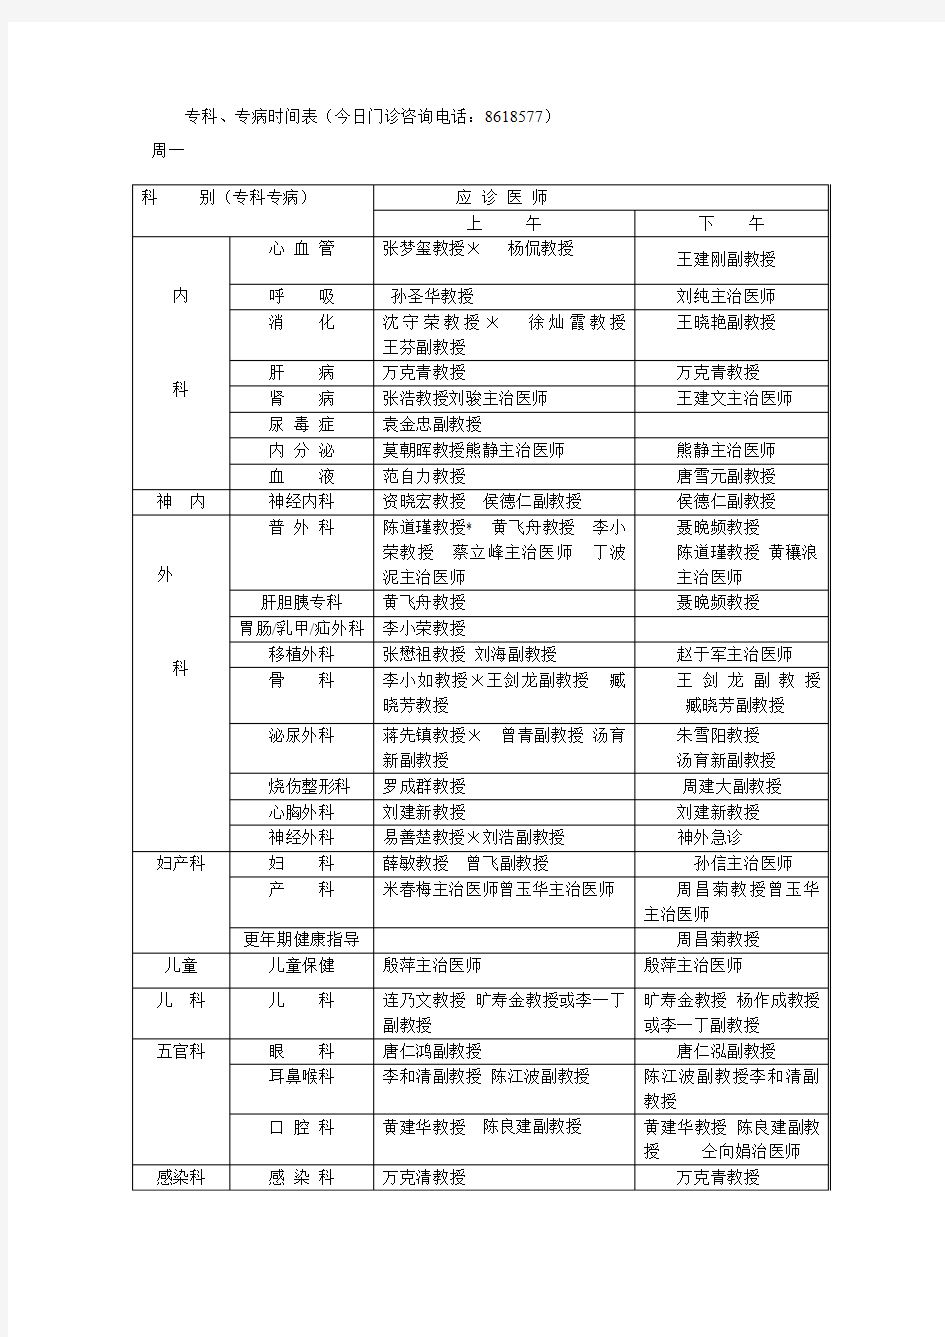 专科、专病时间表 - 中南大学湘雅三医院